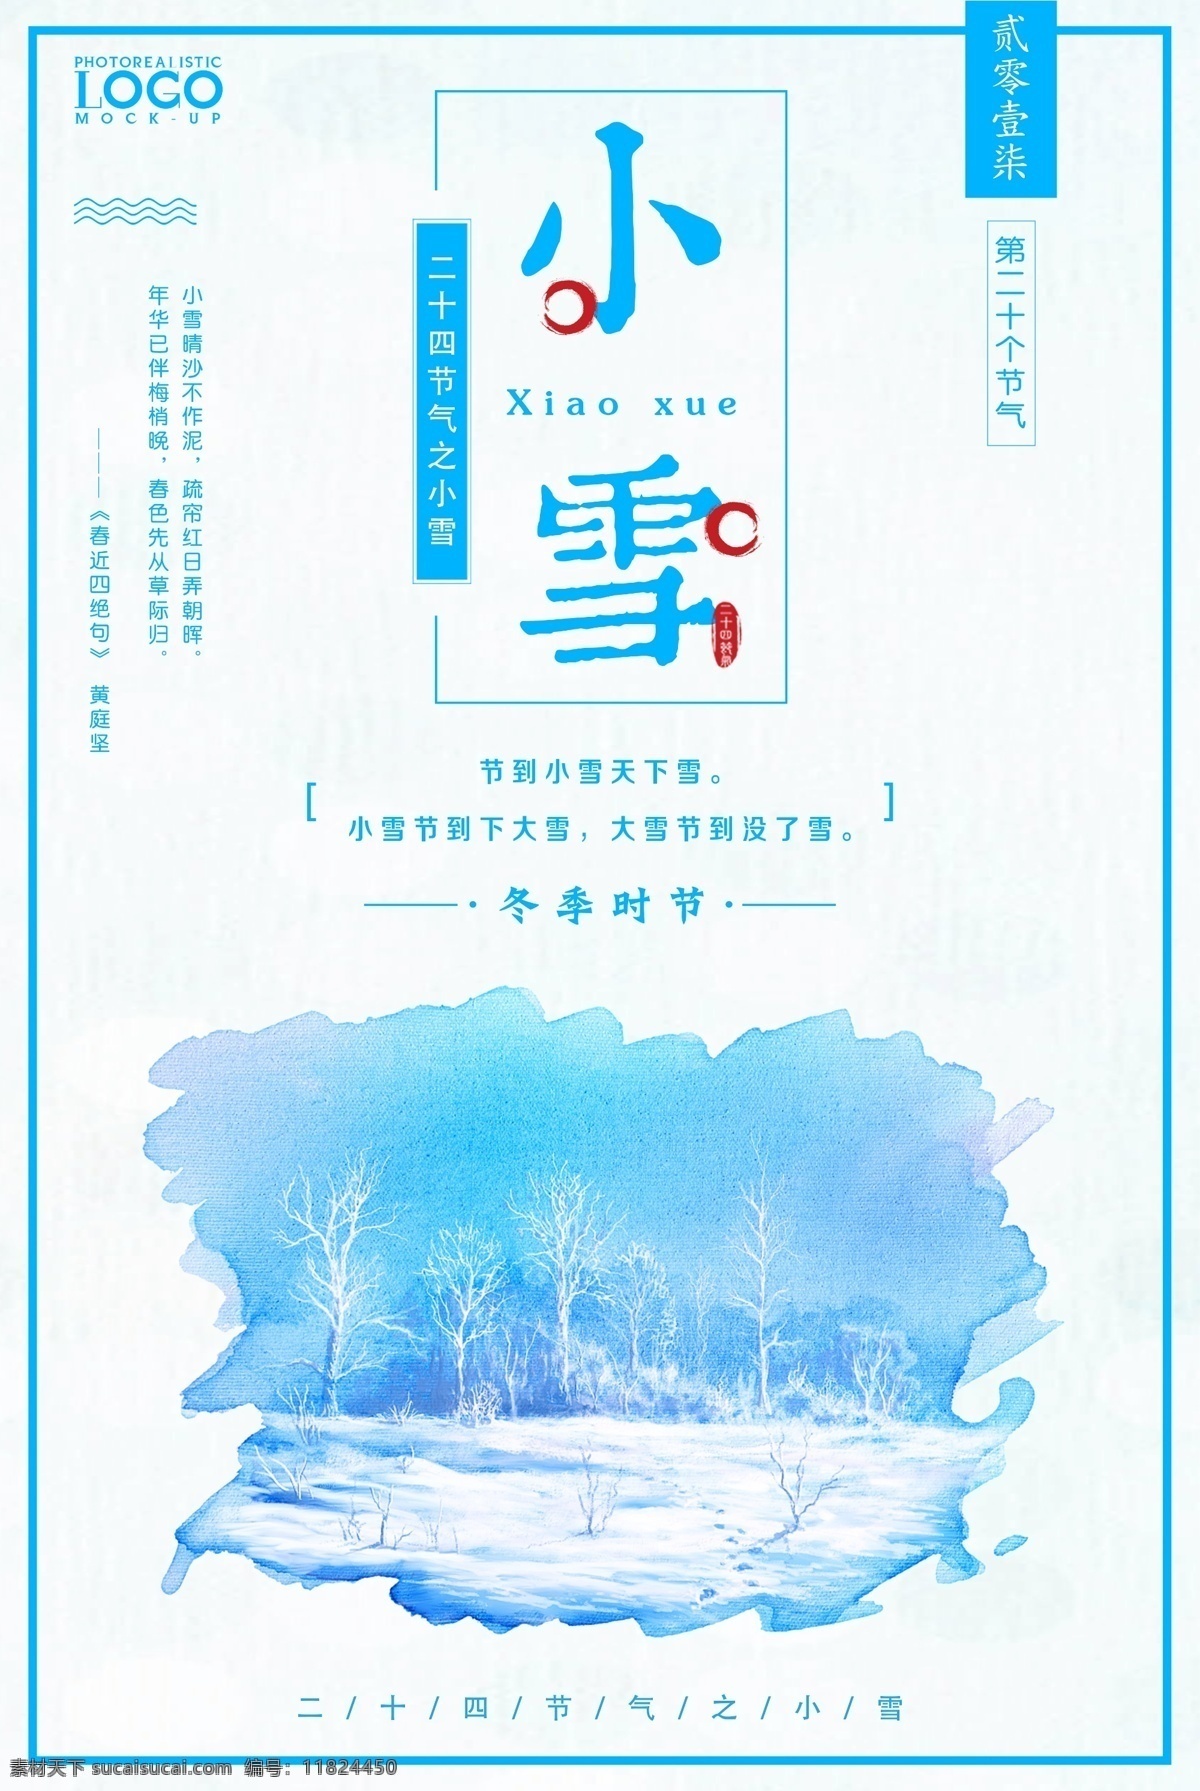 二十四节气 小雪 冬季海报 中国 中国传统 卡通中国 节气 大雪图片 模板 大雪 小雪花图片 十二节气